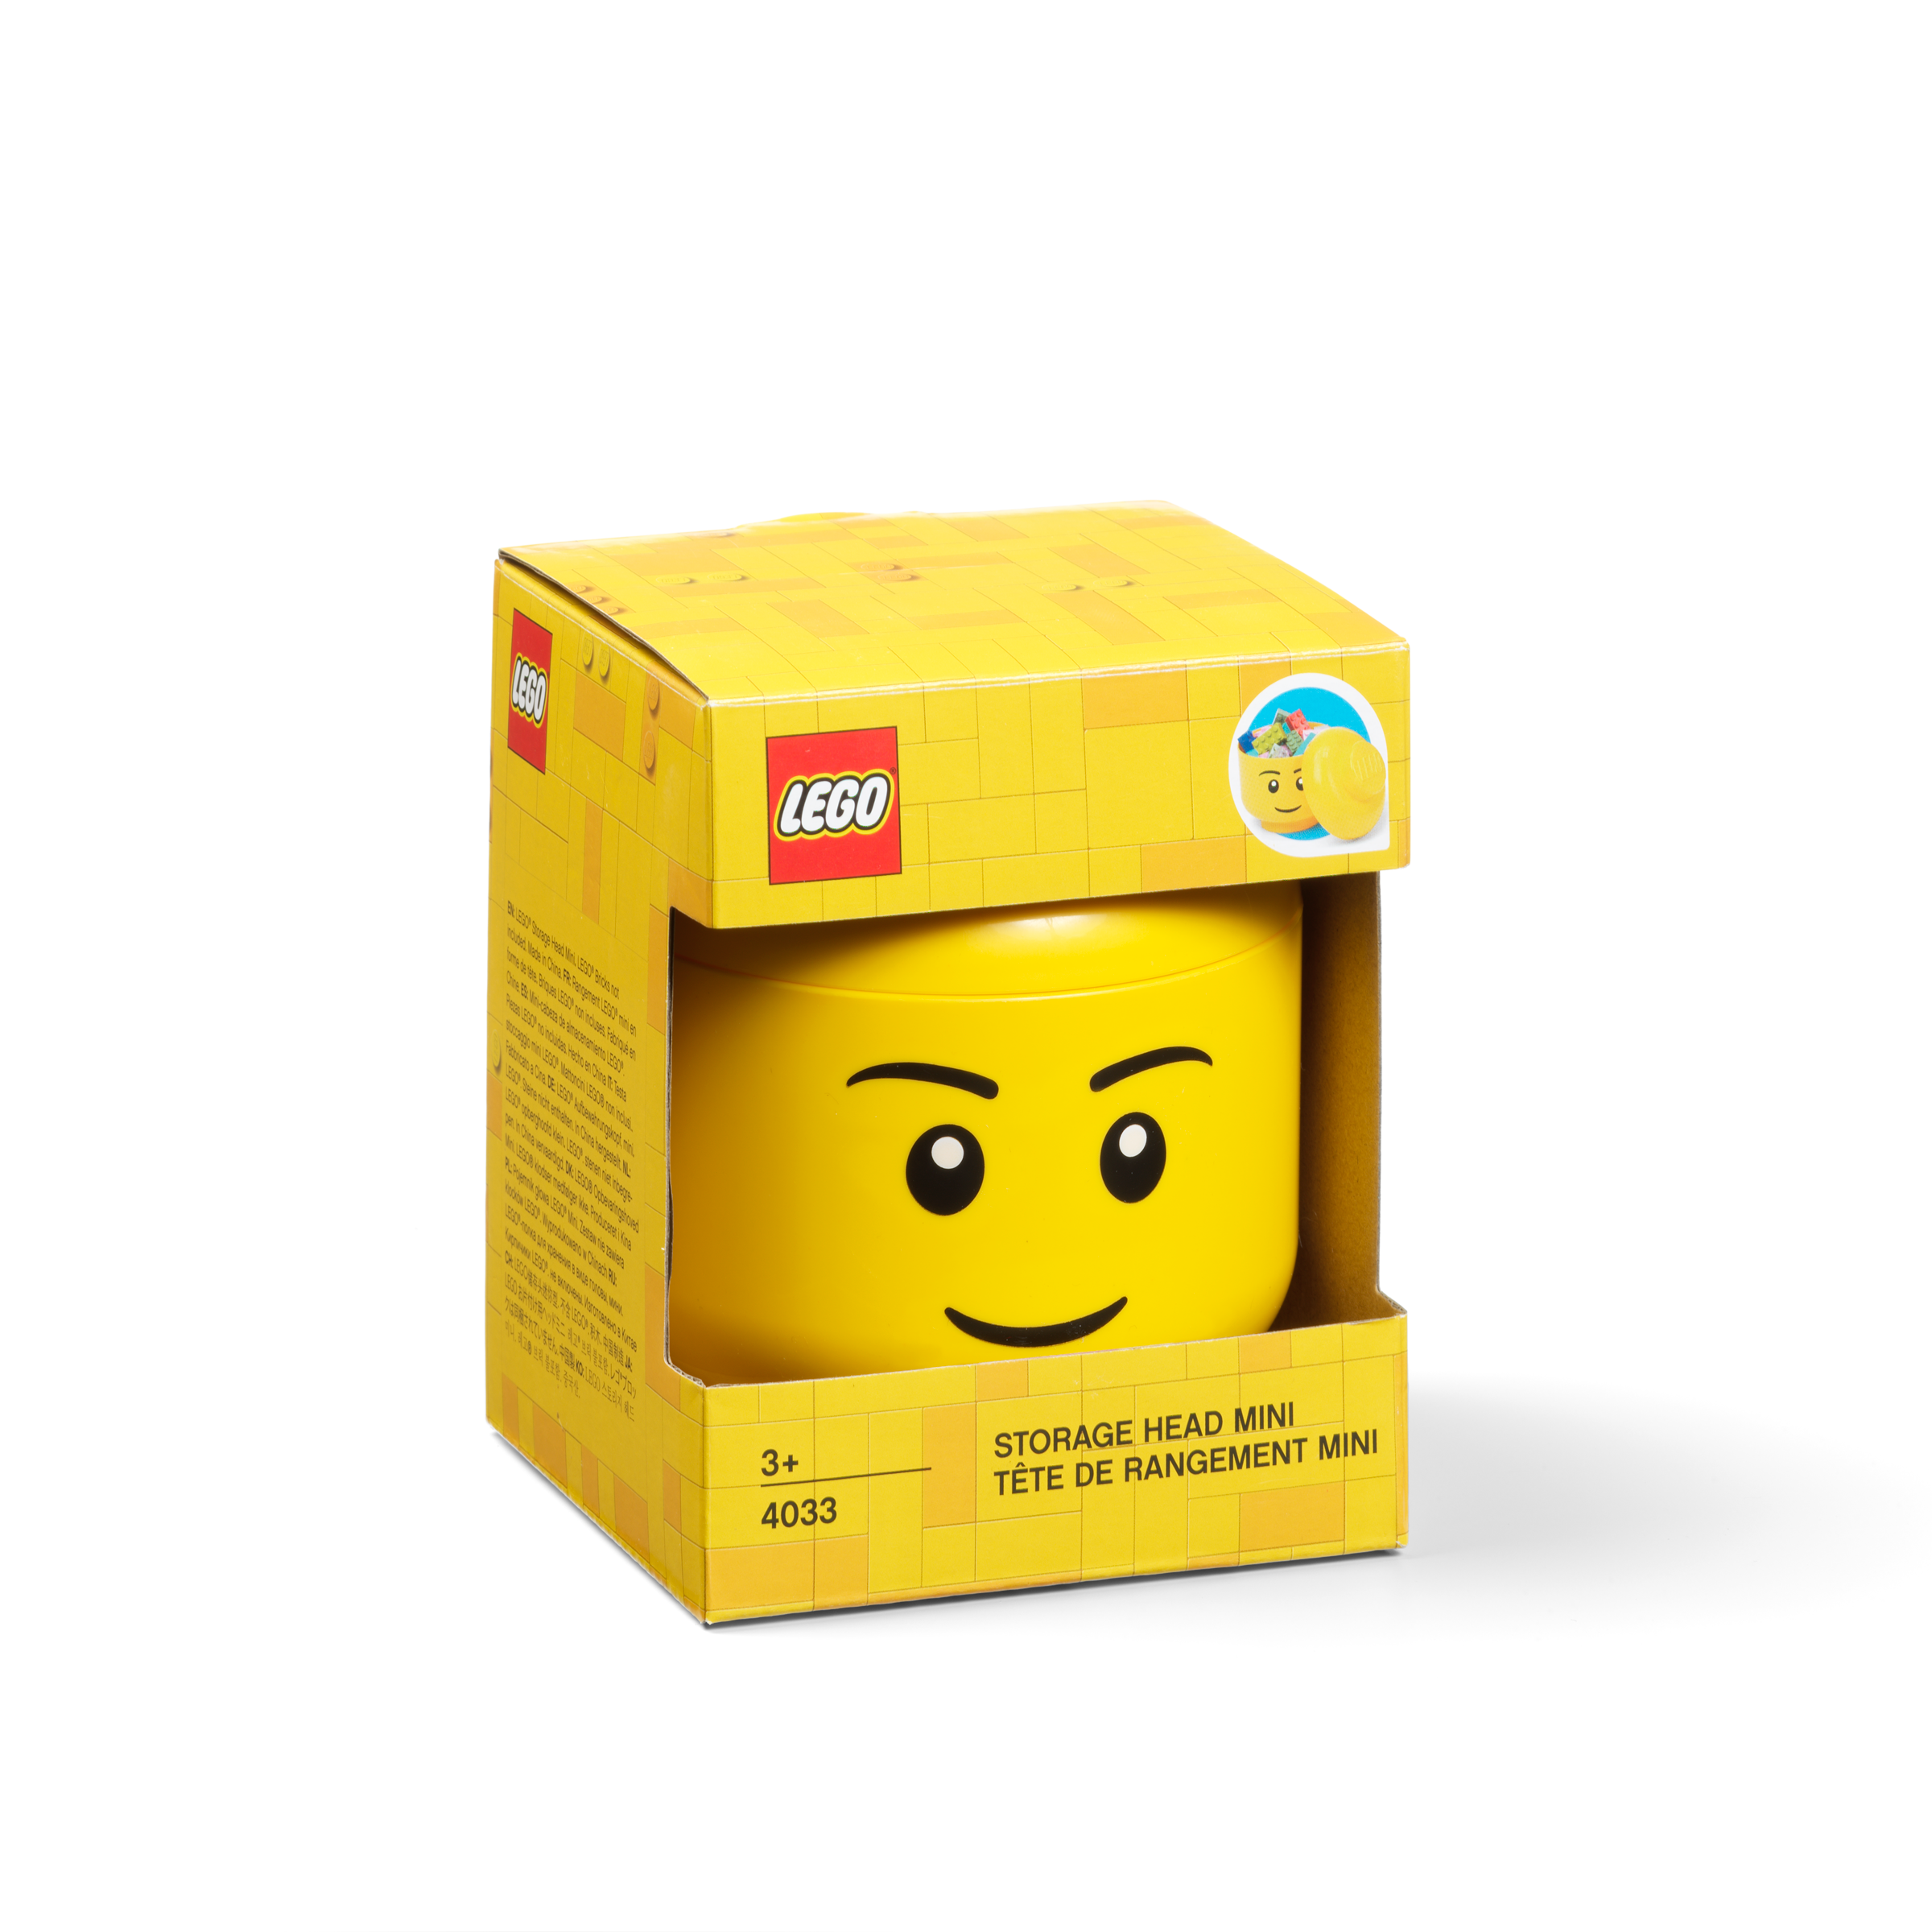 La boîte de rangement 41907 | DOTS | Boutique LEGO® officielle BE